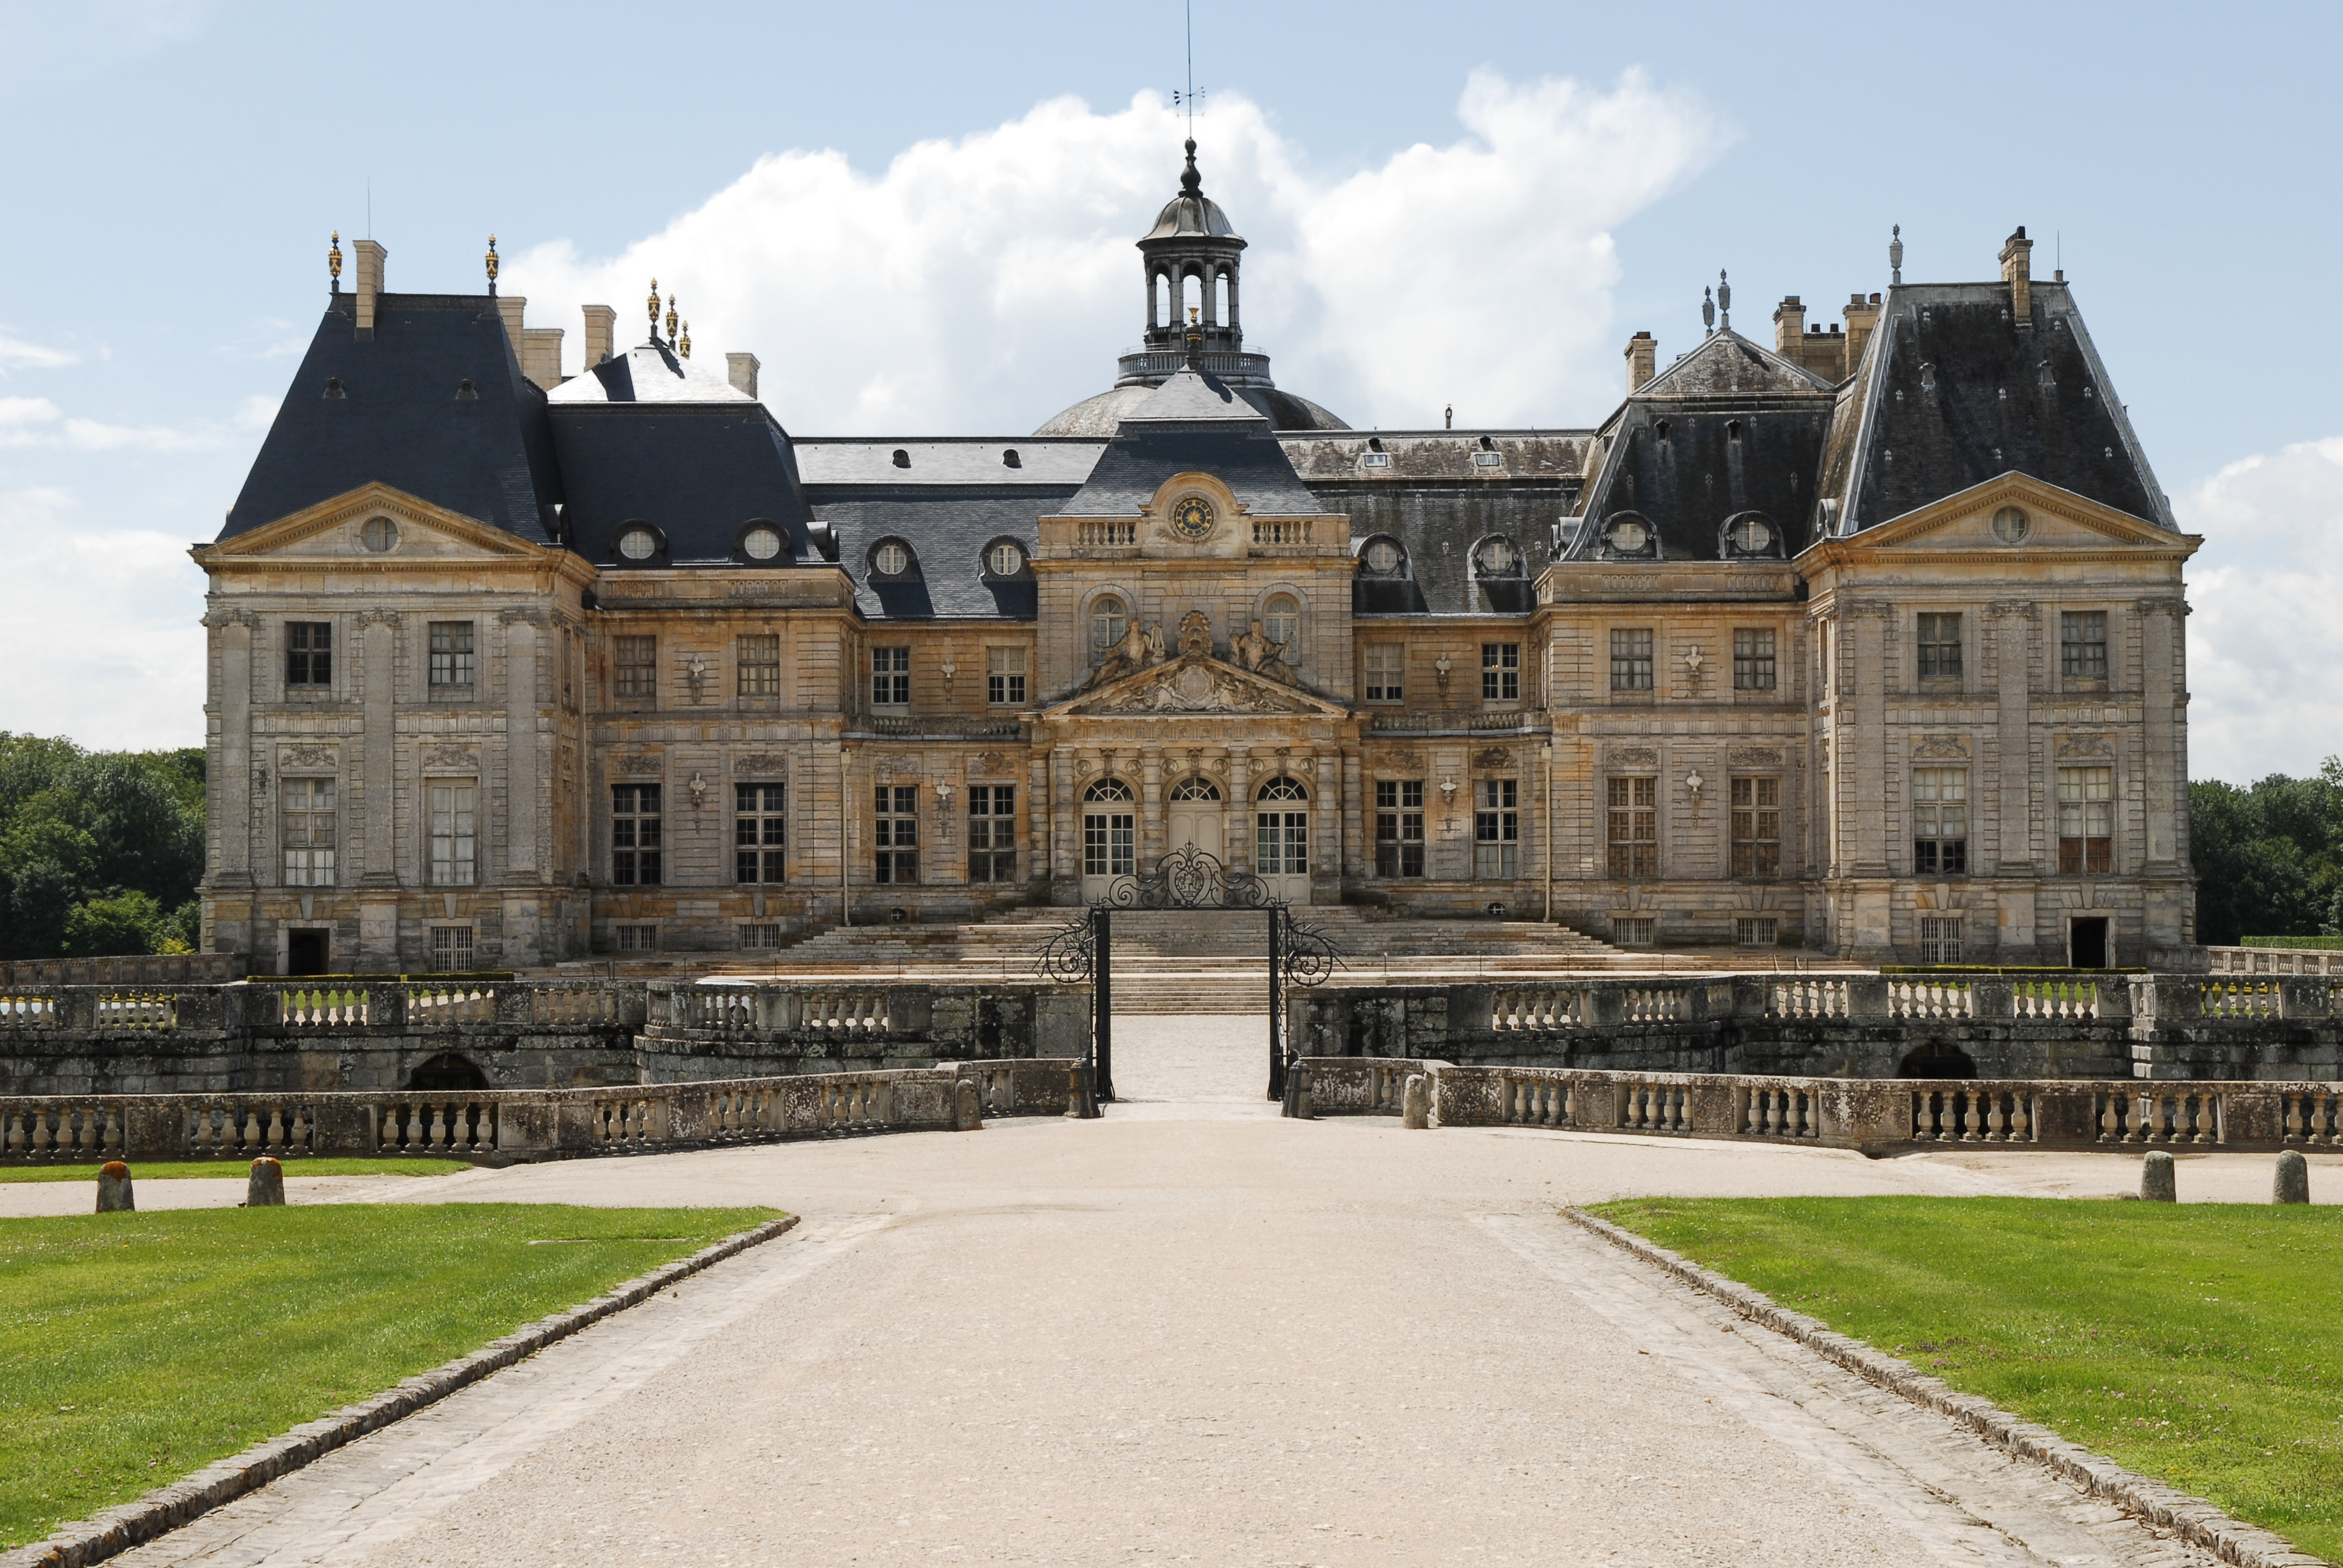 666 millió forint értékben loptak el dolgokat egy híres francia kastélyból